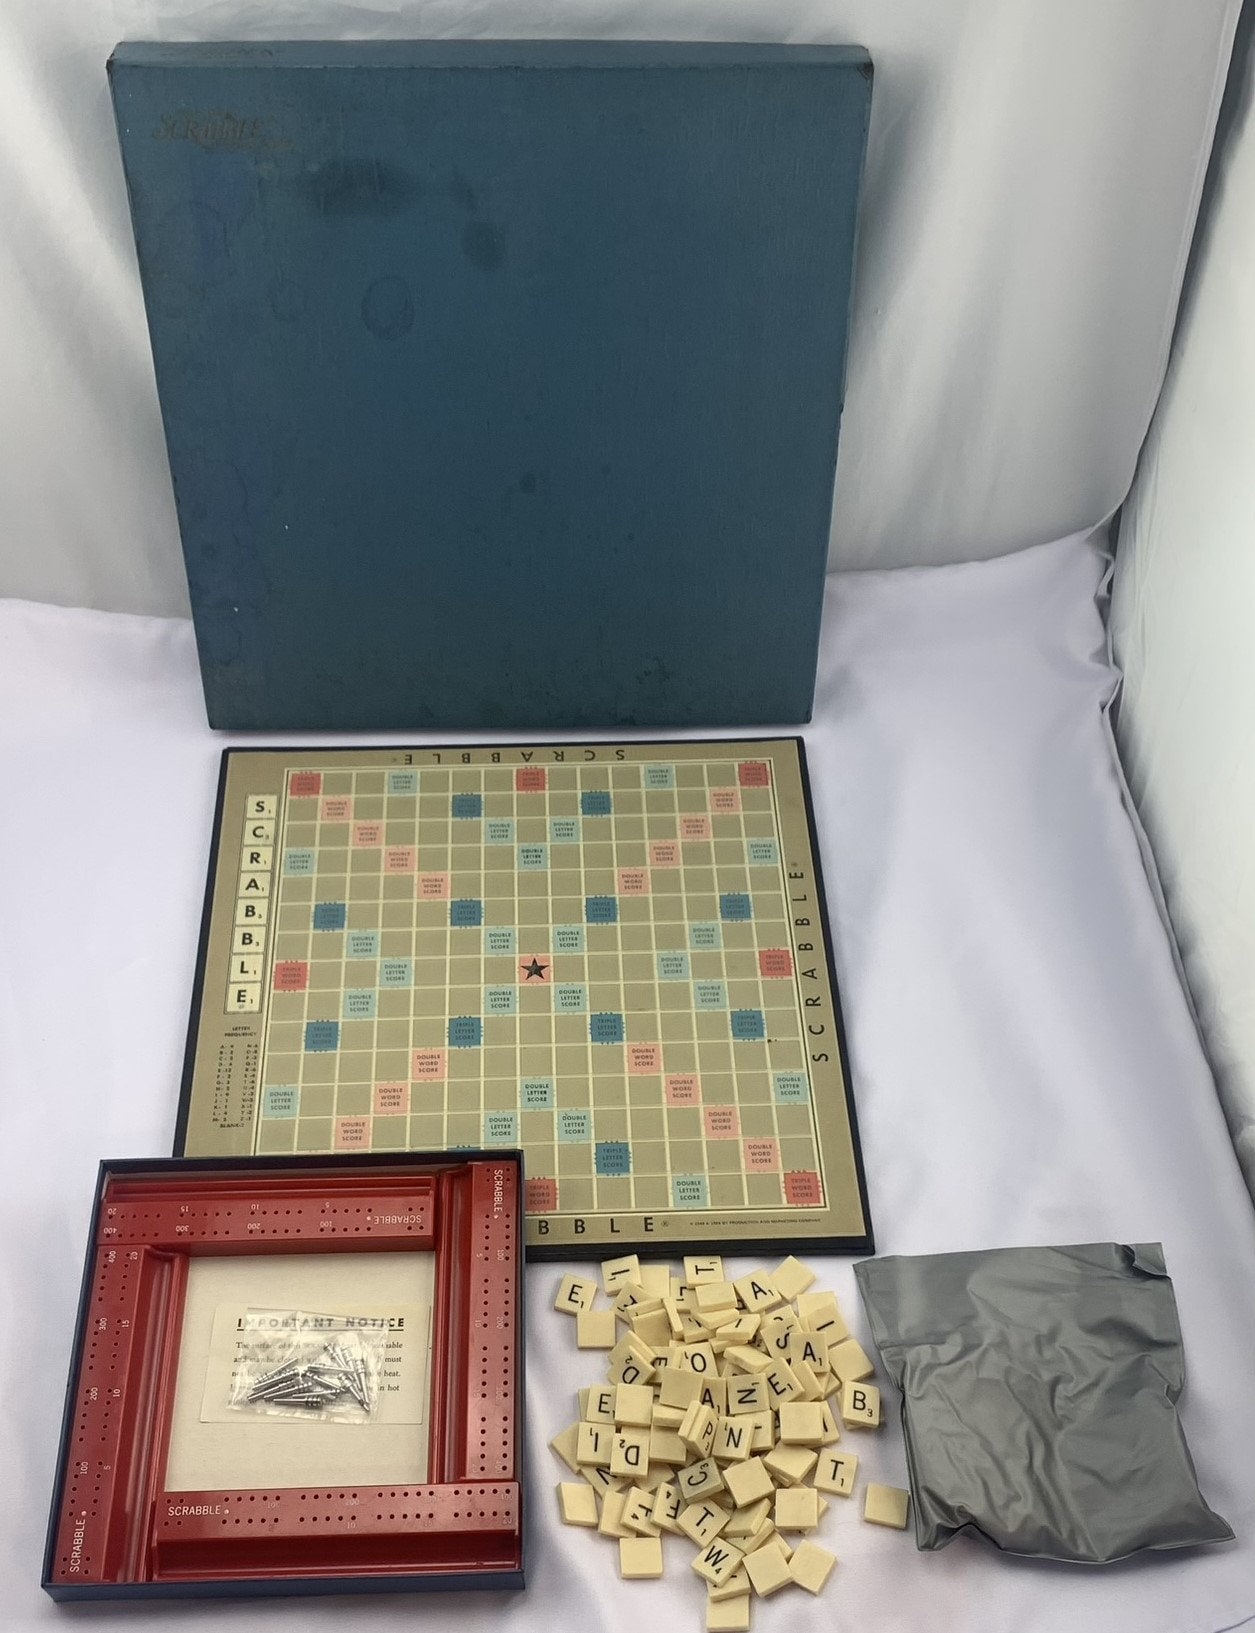 1977 Scrabble Deluxe 